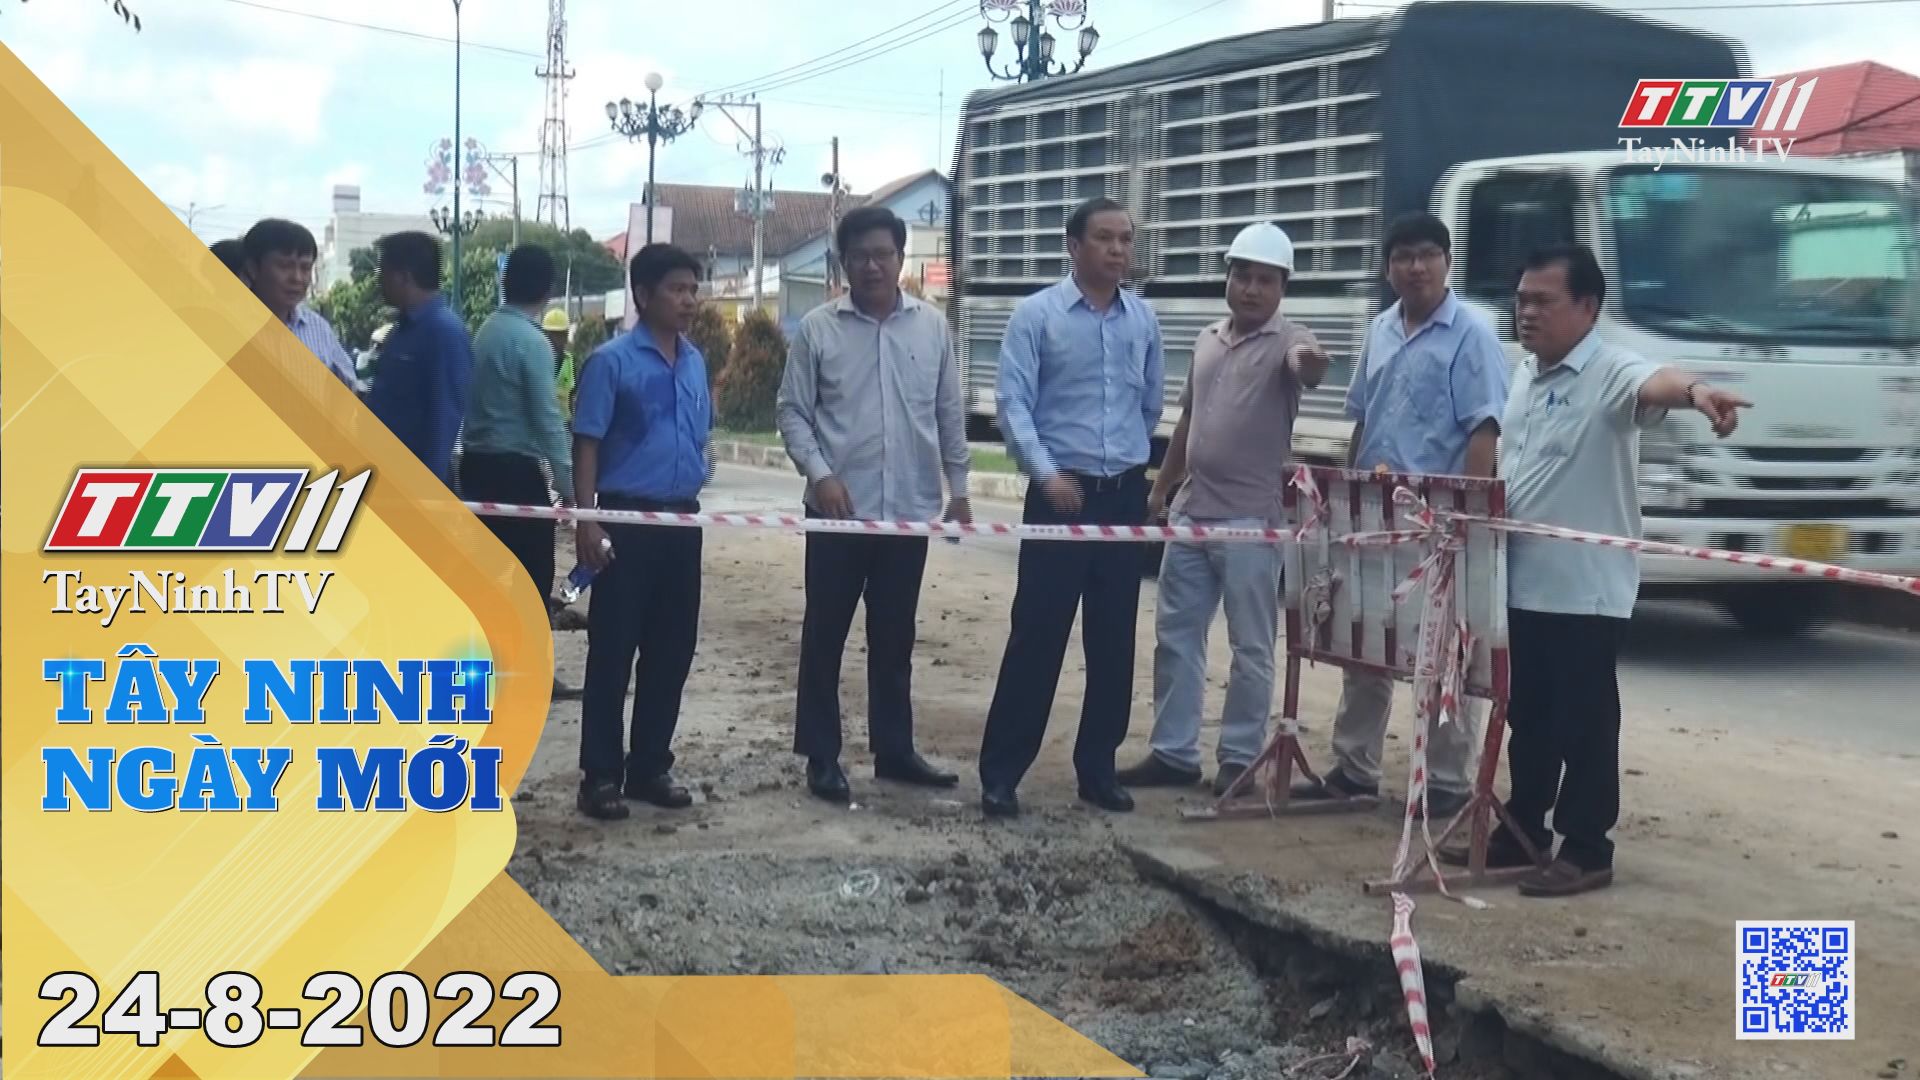 Tây Ninh ngày mới 24-8-2022 | Tin tức hôm nay | TayNinhTV